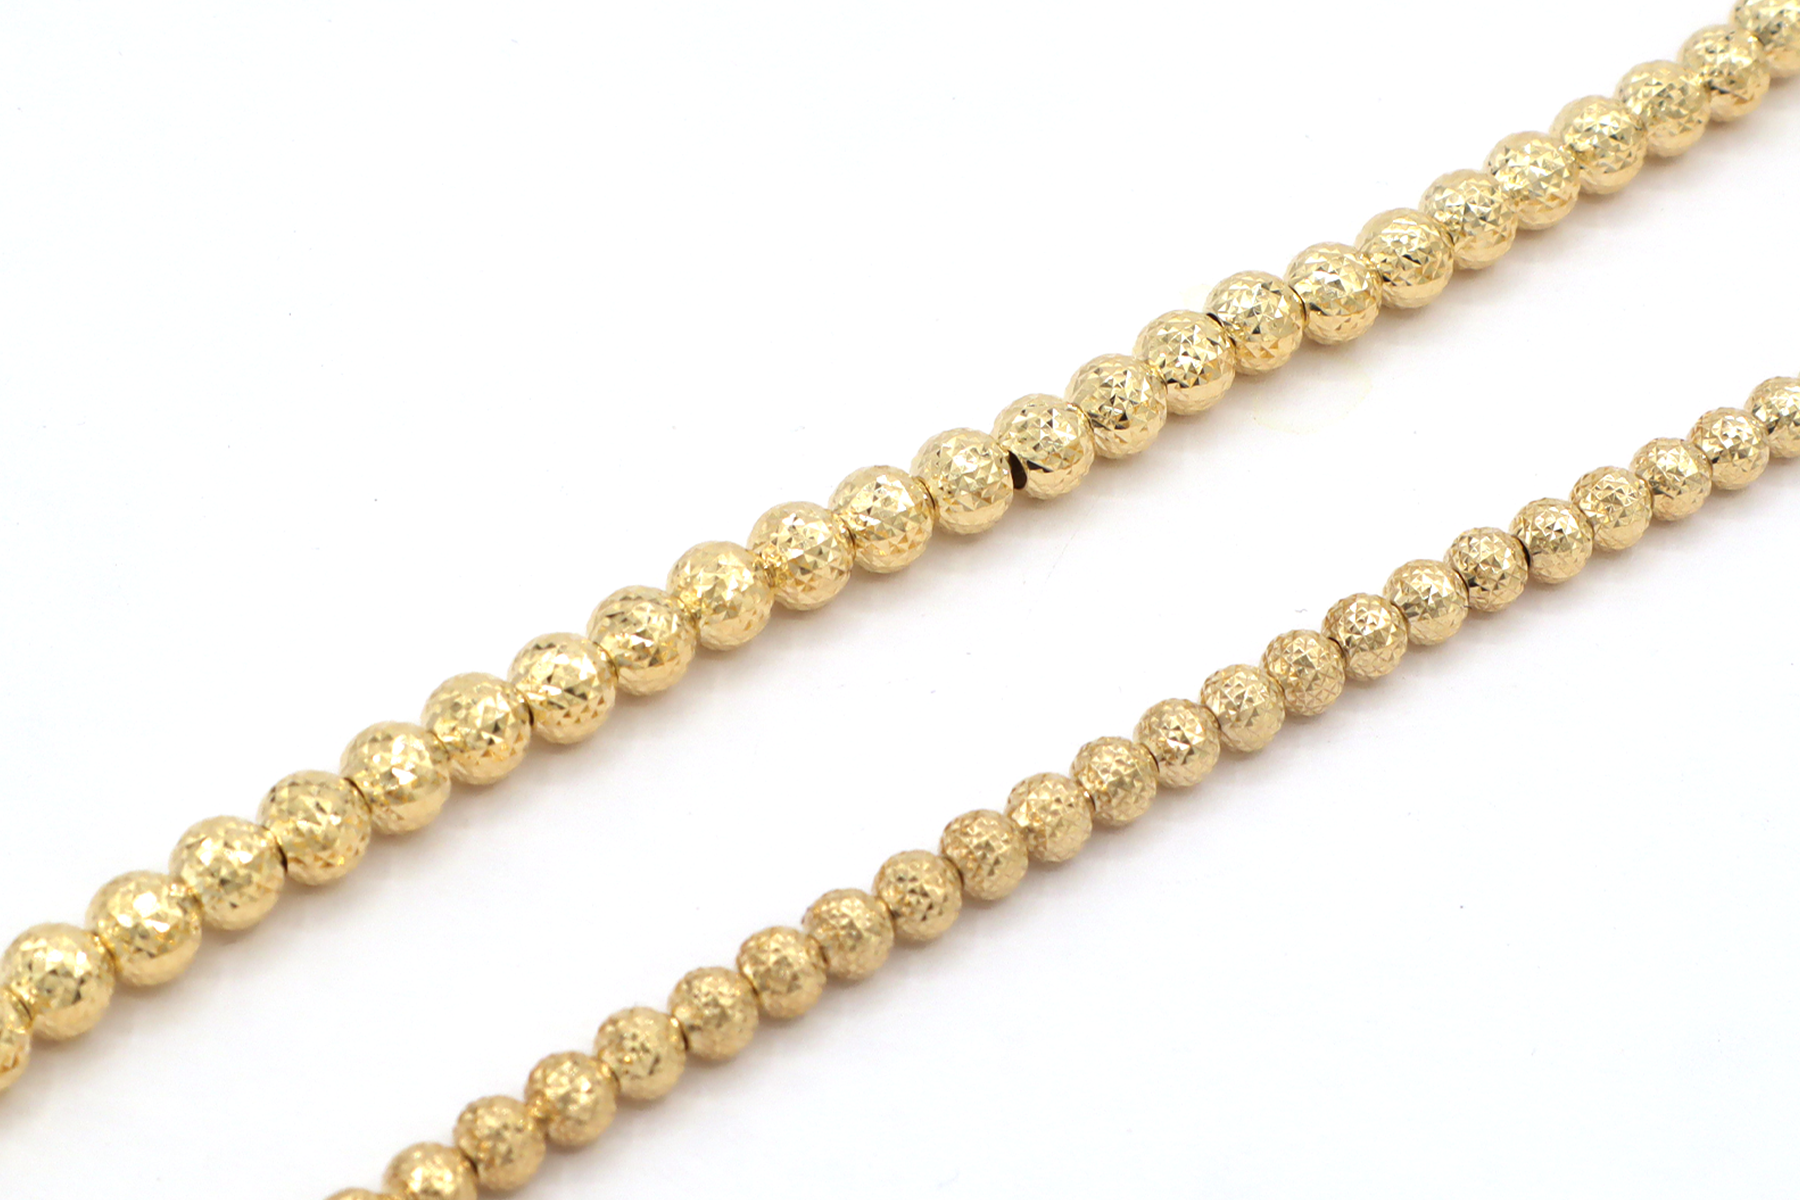 Radiant Luna: 14k Gold Moon Beads Bracelet - Exquisite Elegance for Your Wrist